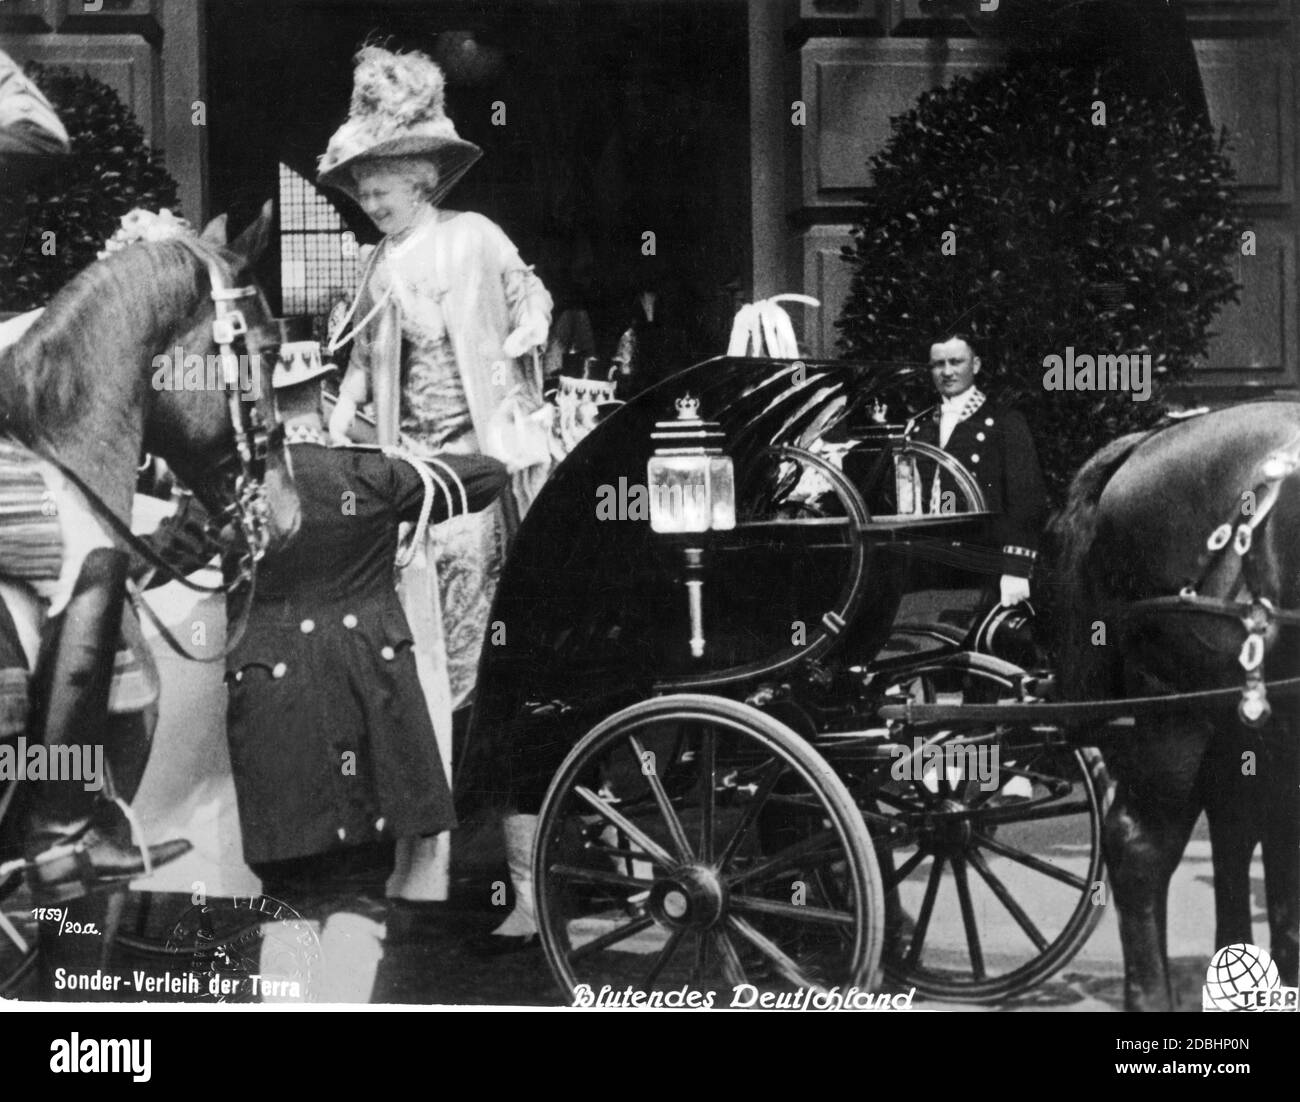 La pareja real británica visitó Berlín el 29 de mayo de 1913 con ocasión de la boda de la hija del emperador, la princesa Victoria Louise, con el príncipe de Welf Ernst August de Hanover, duque de Cumberland. La foto muestra la salida de la Reina María Inglesa (María de Teck, sentada en el carruaje, cubierta) y la Emperatriz Augusta Victoria (centro, de pie) de Lehrter Bahnhof. Foto de stock